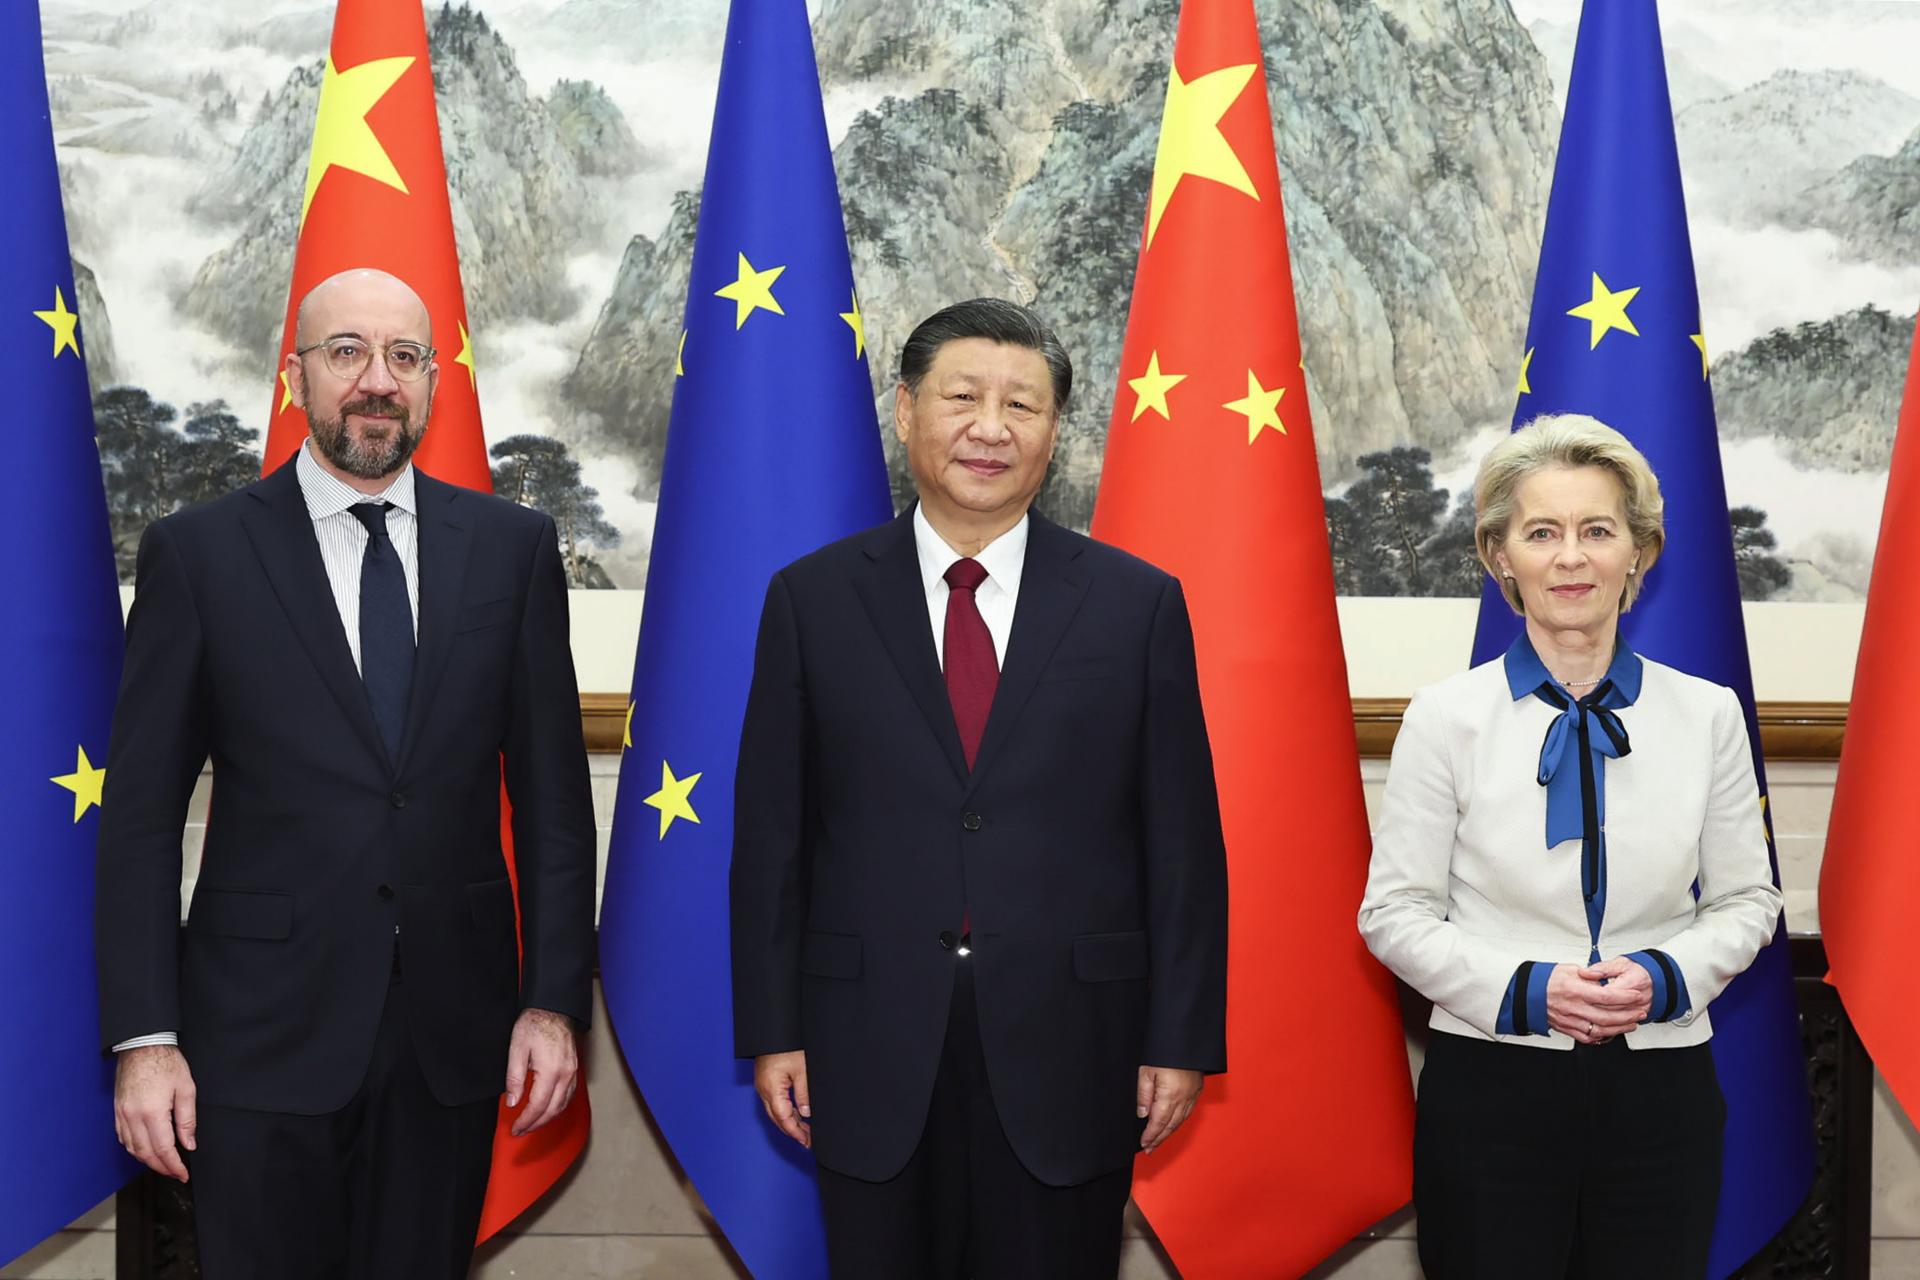 Obchod, vojna na Ukrajine aj otázka ľudských práv. EÚ a Čína sa na spoločnom samite snažia vyriešiť nezhody